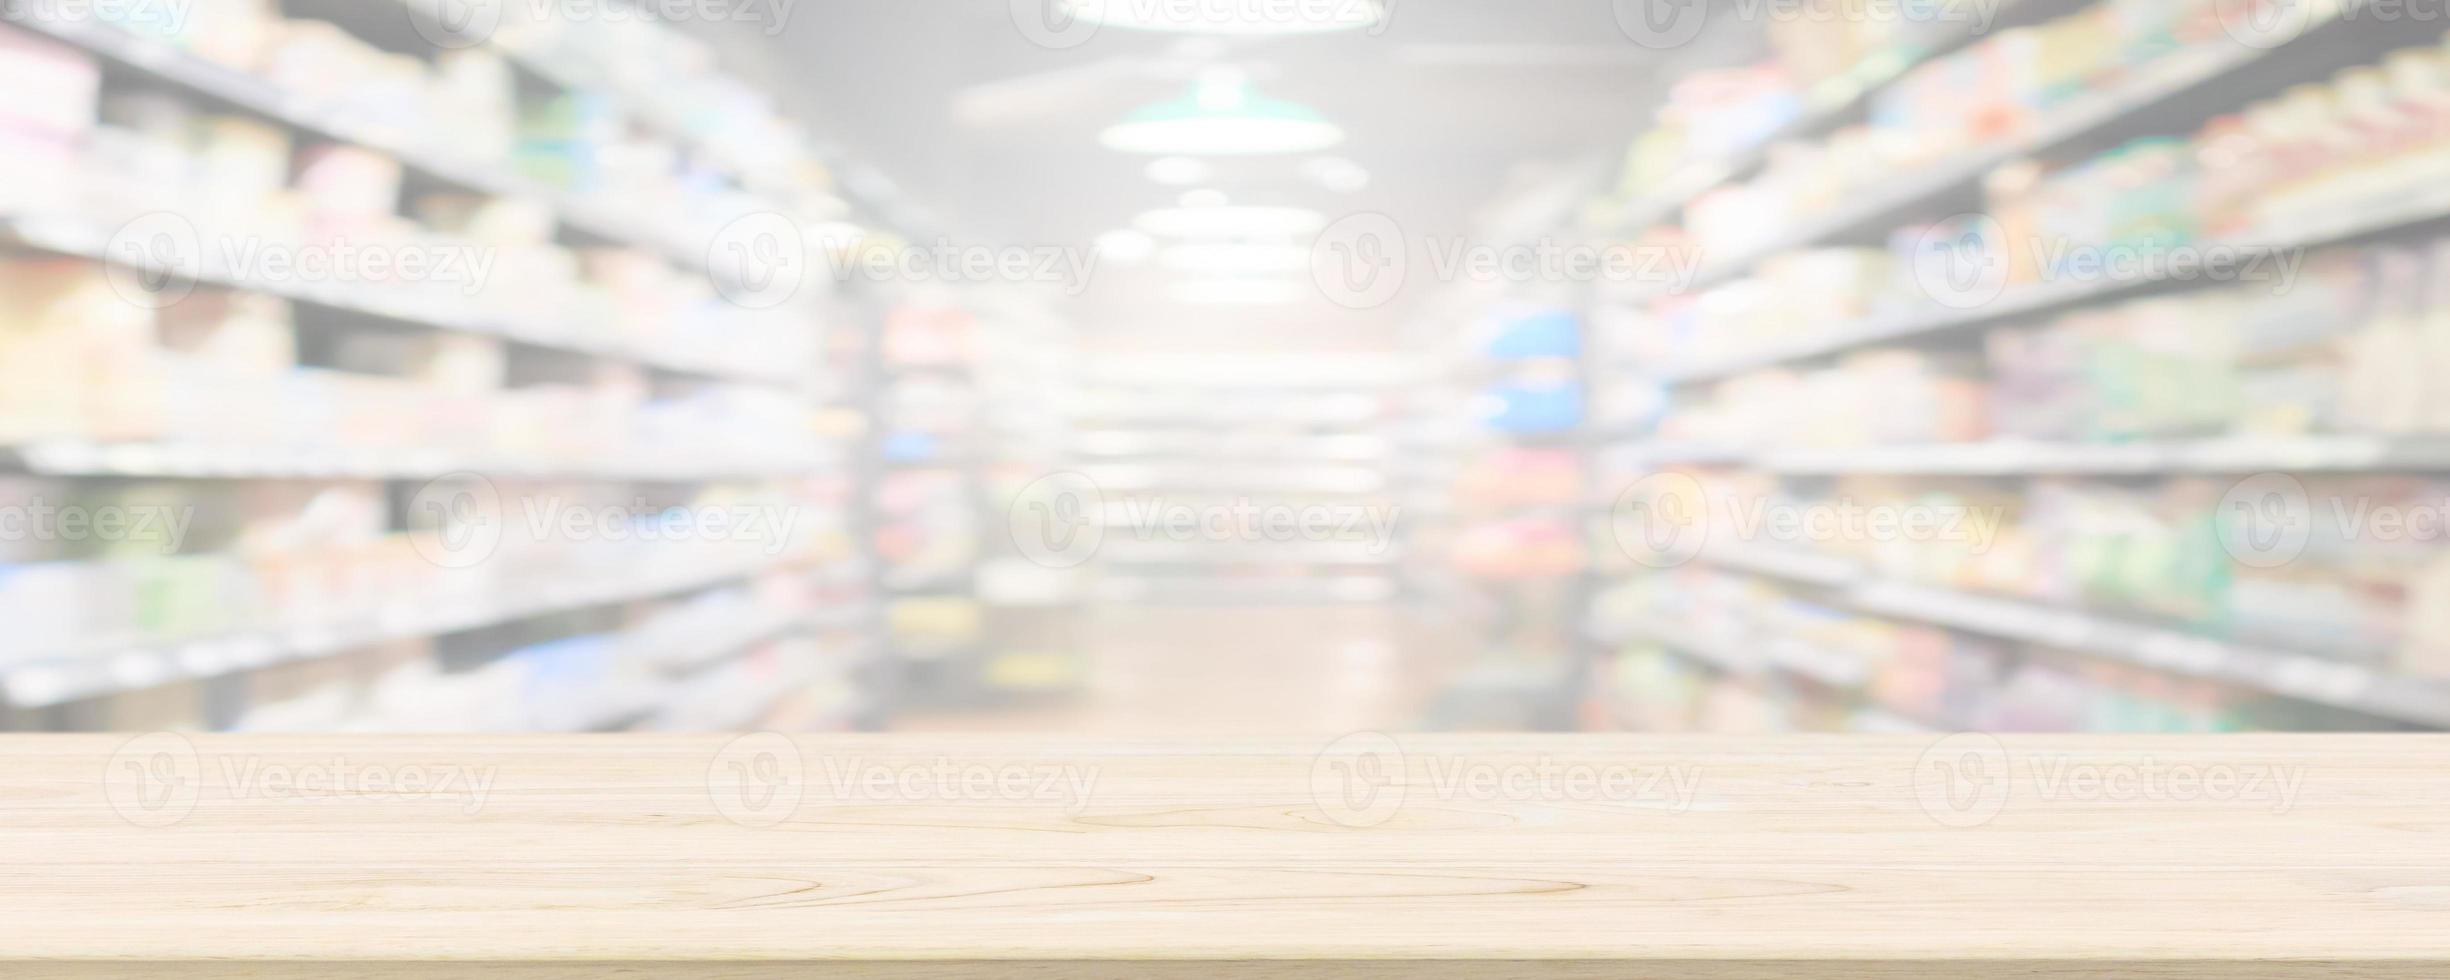 tampo da mesa de madeira com fundo desfocado da mercearia de supermercado com luz bokeh para exibição do produto foto